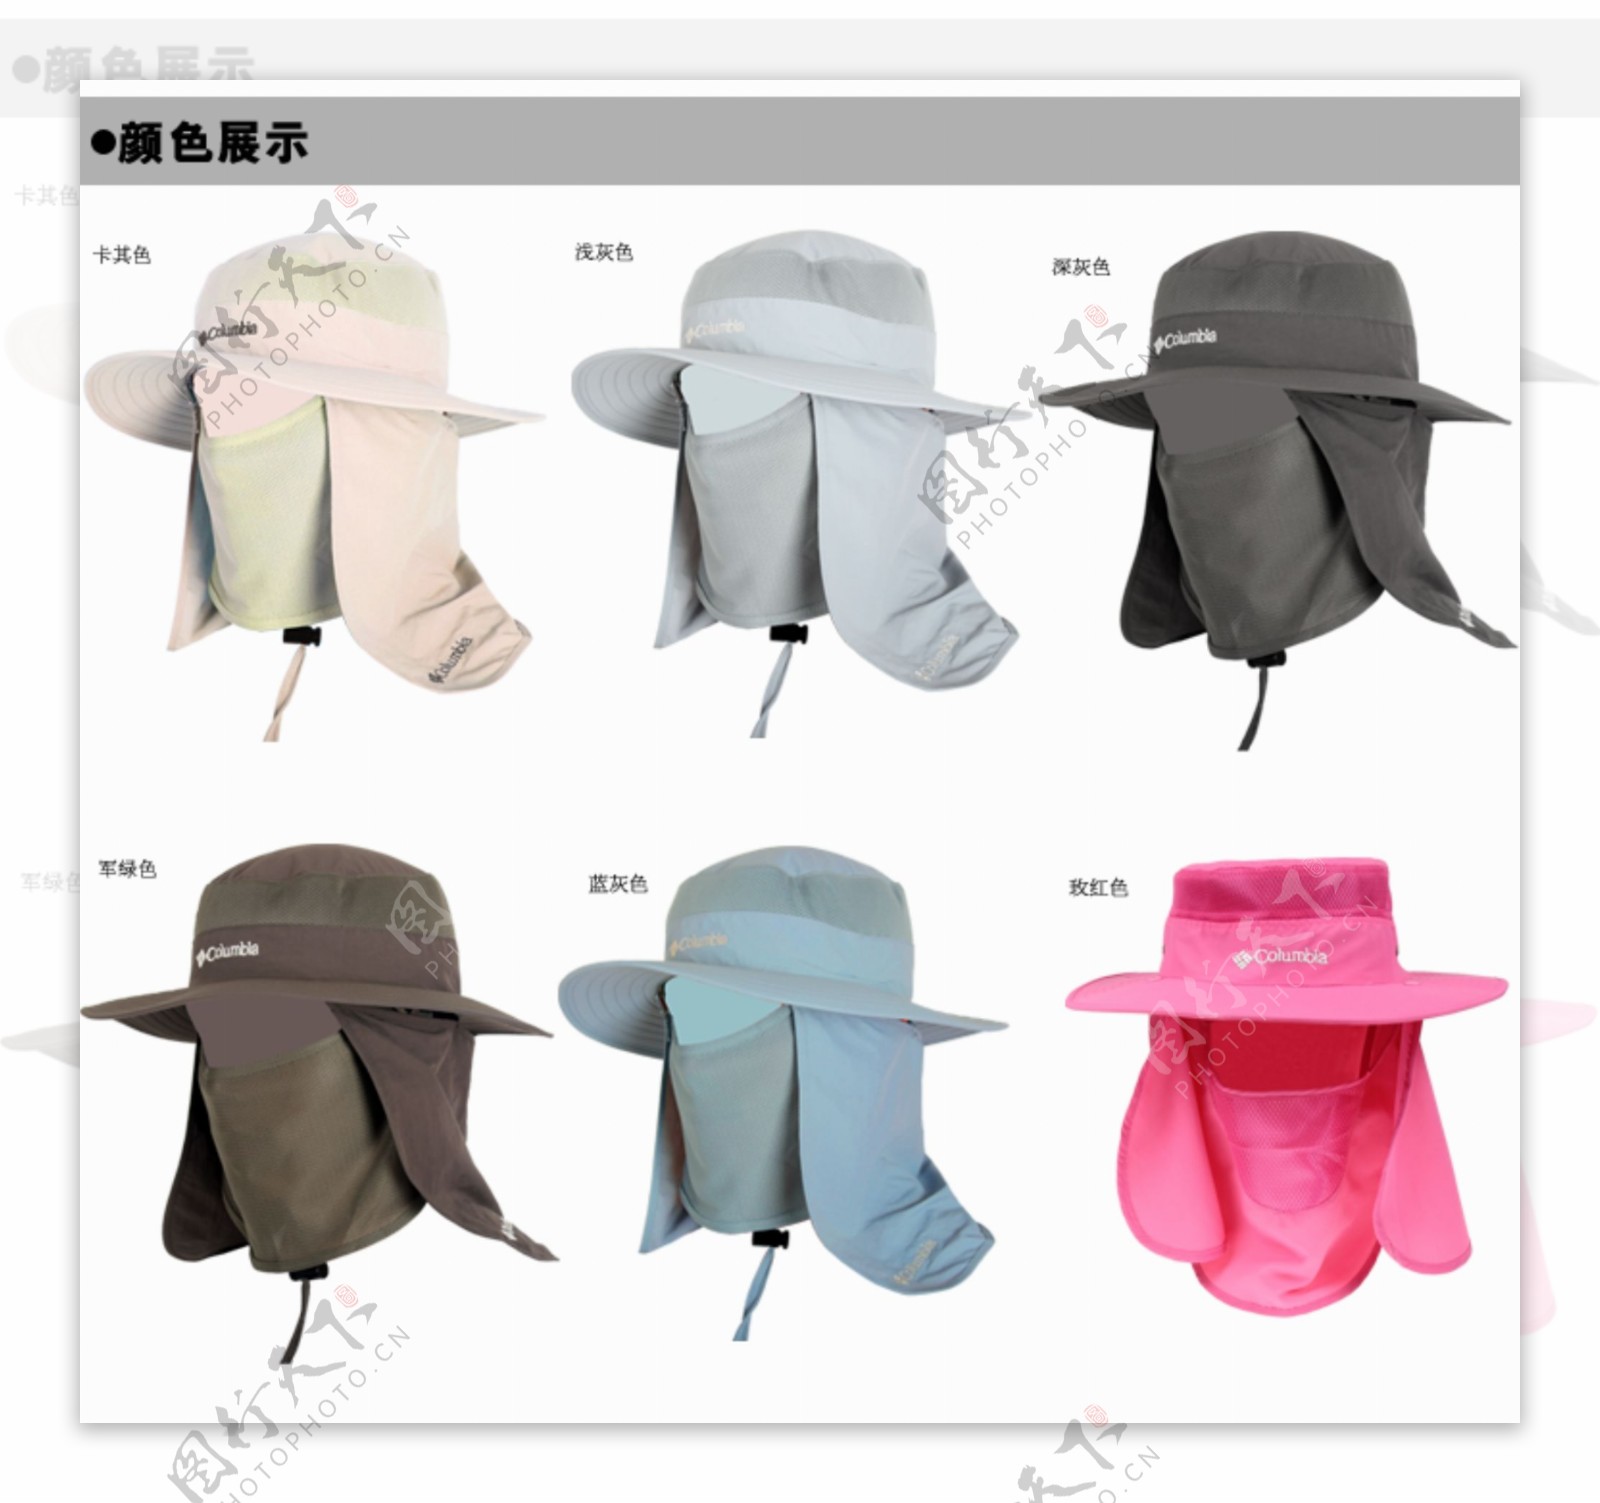 夏季帽子详情页颜色图展示